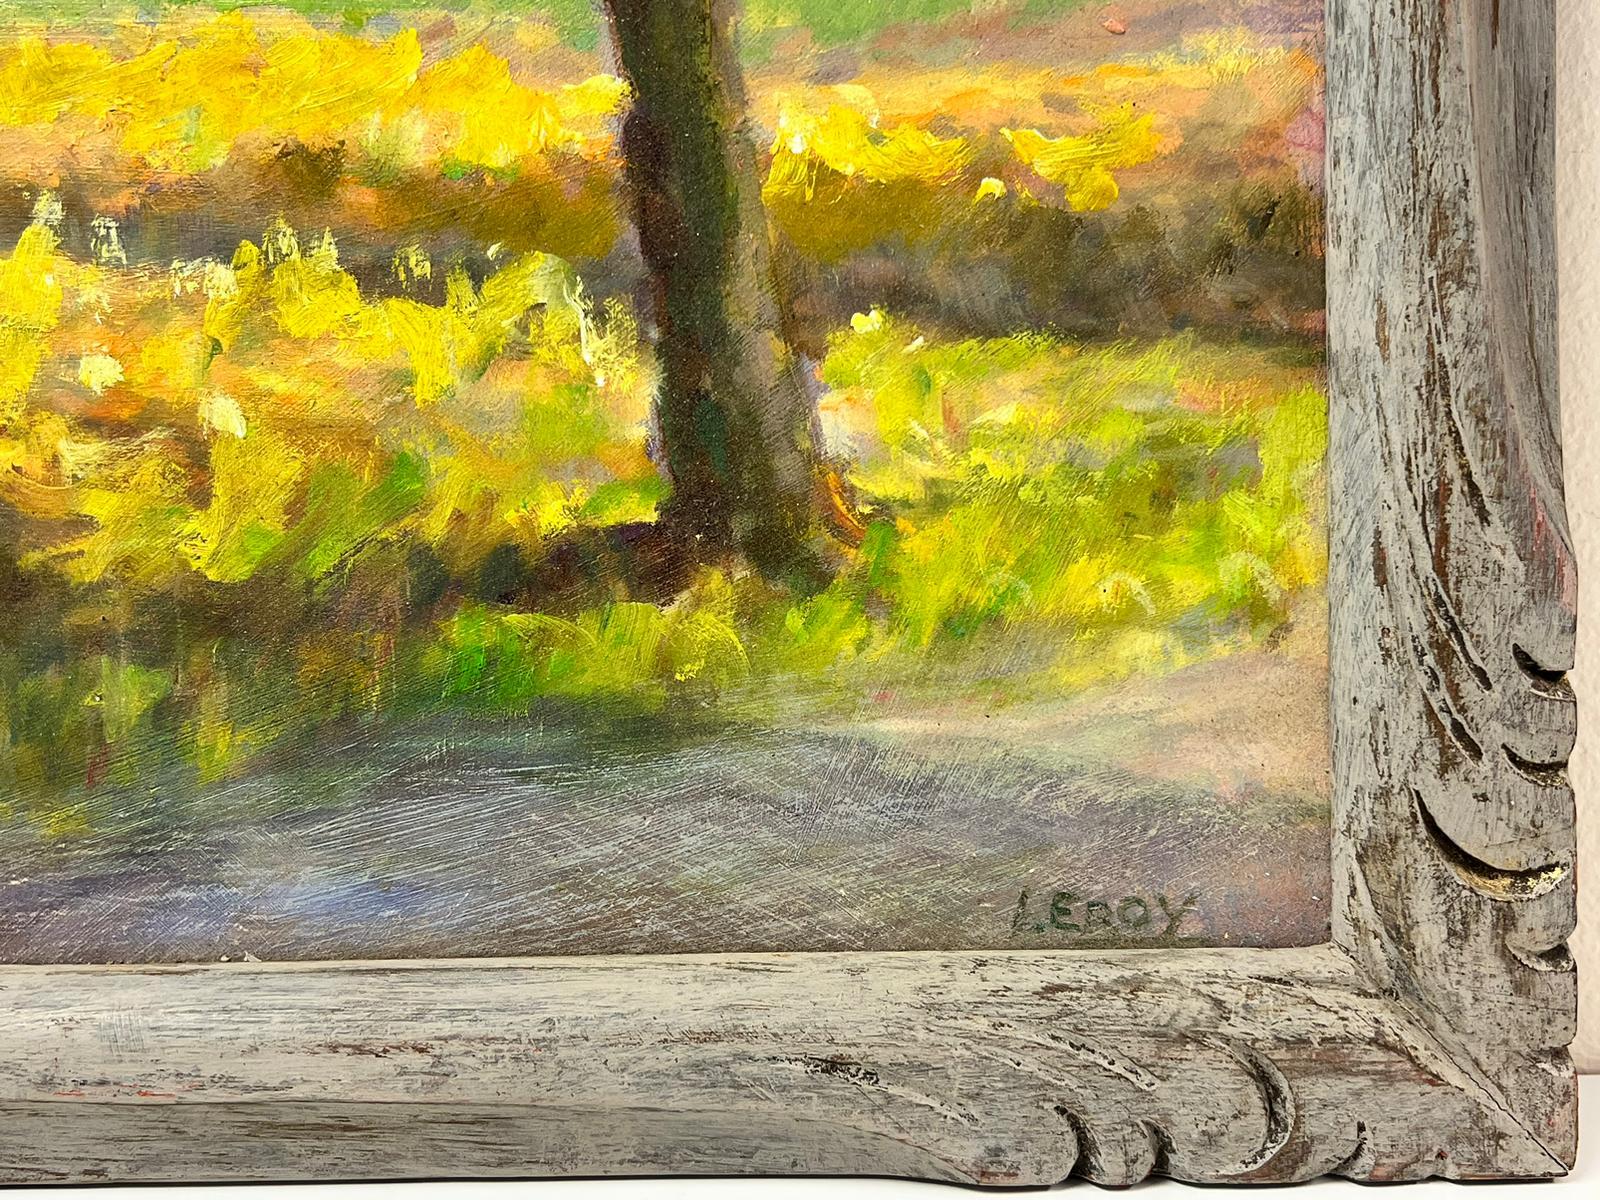 Auvers-sur-Oise France Golden Farm Fields Rural Landscape Signed Oil Painting For Sale 1